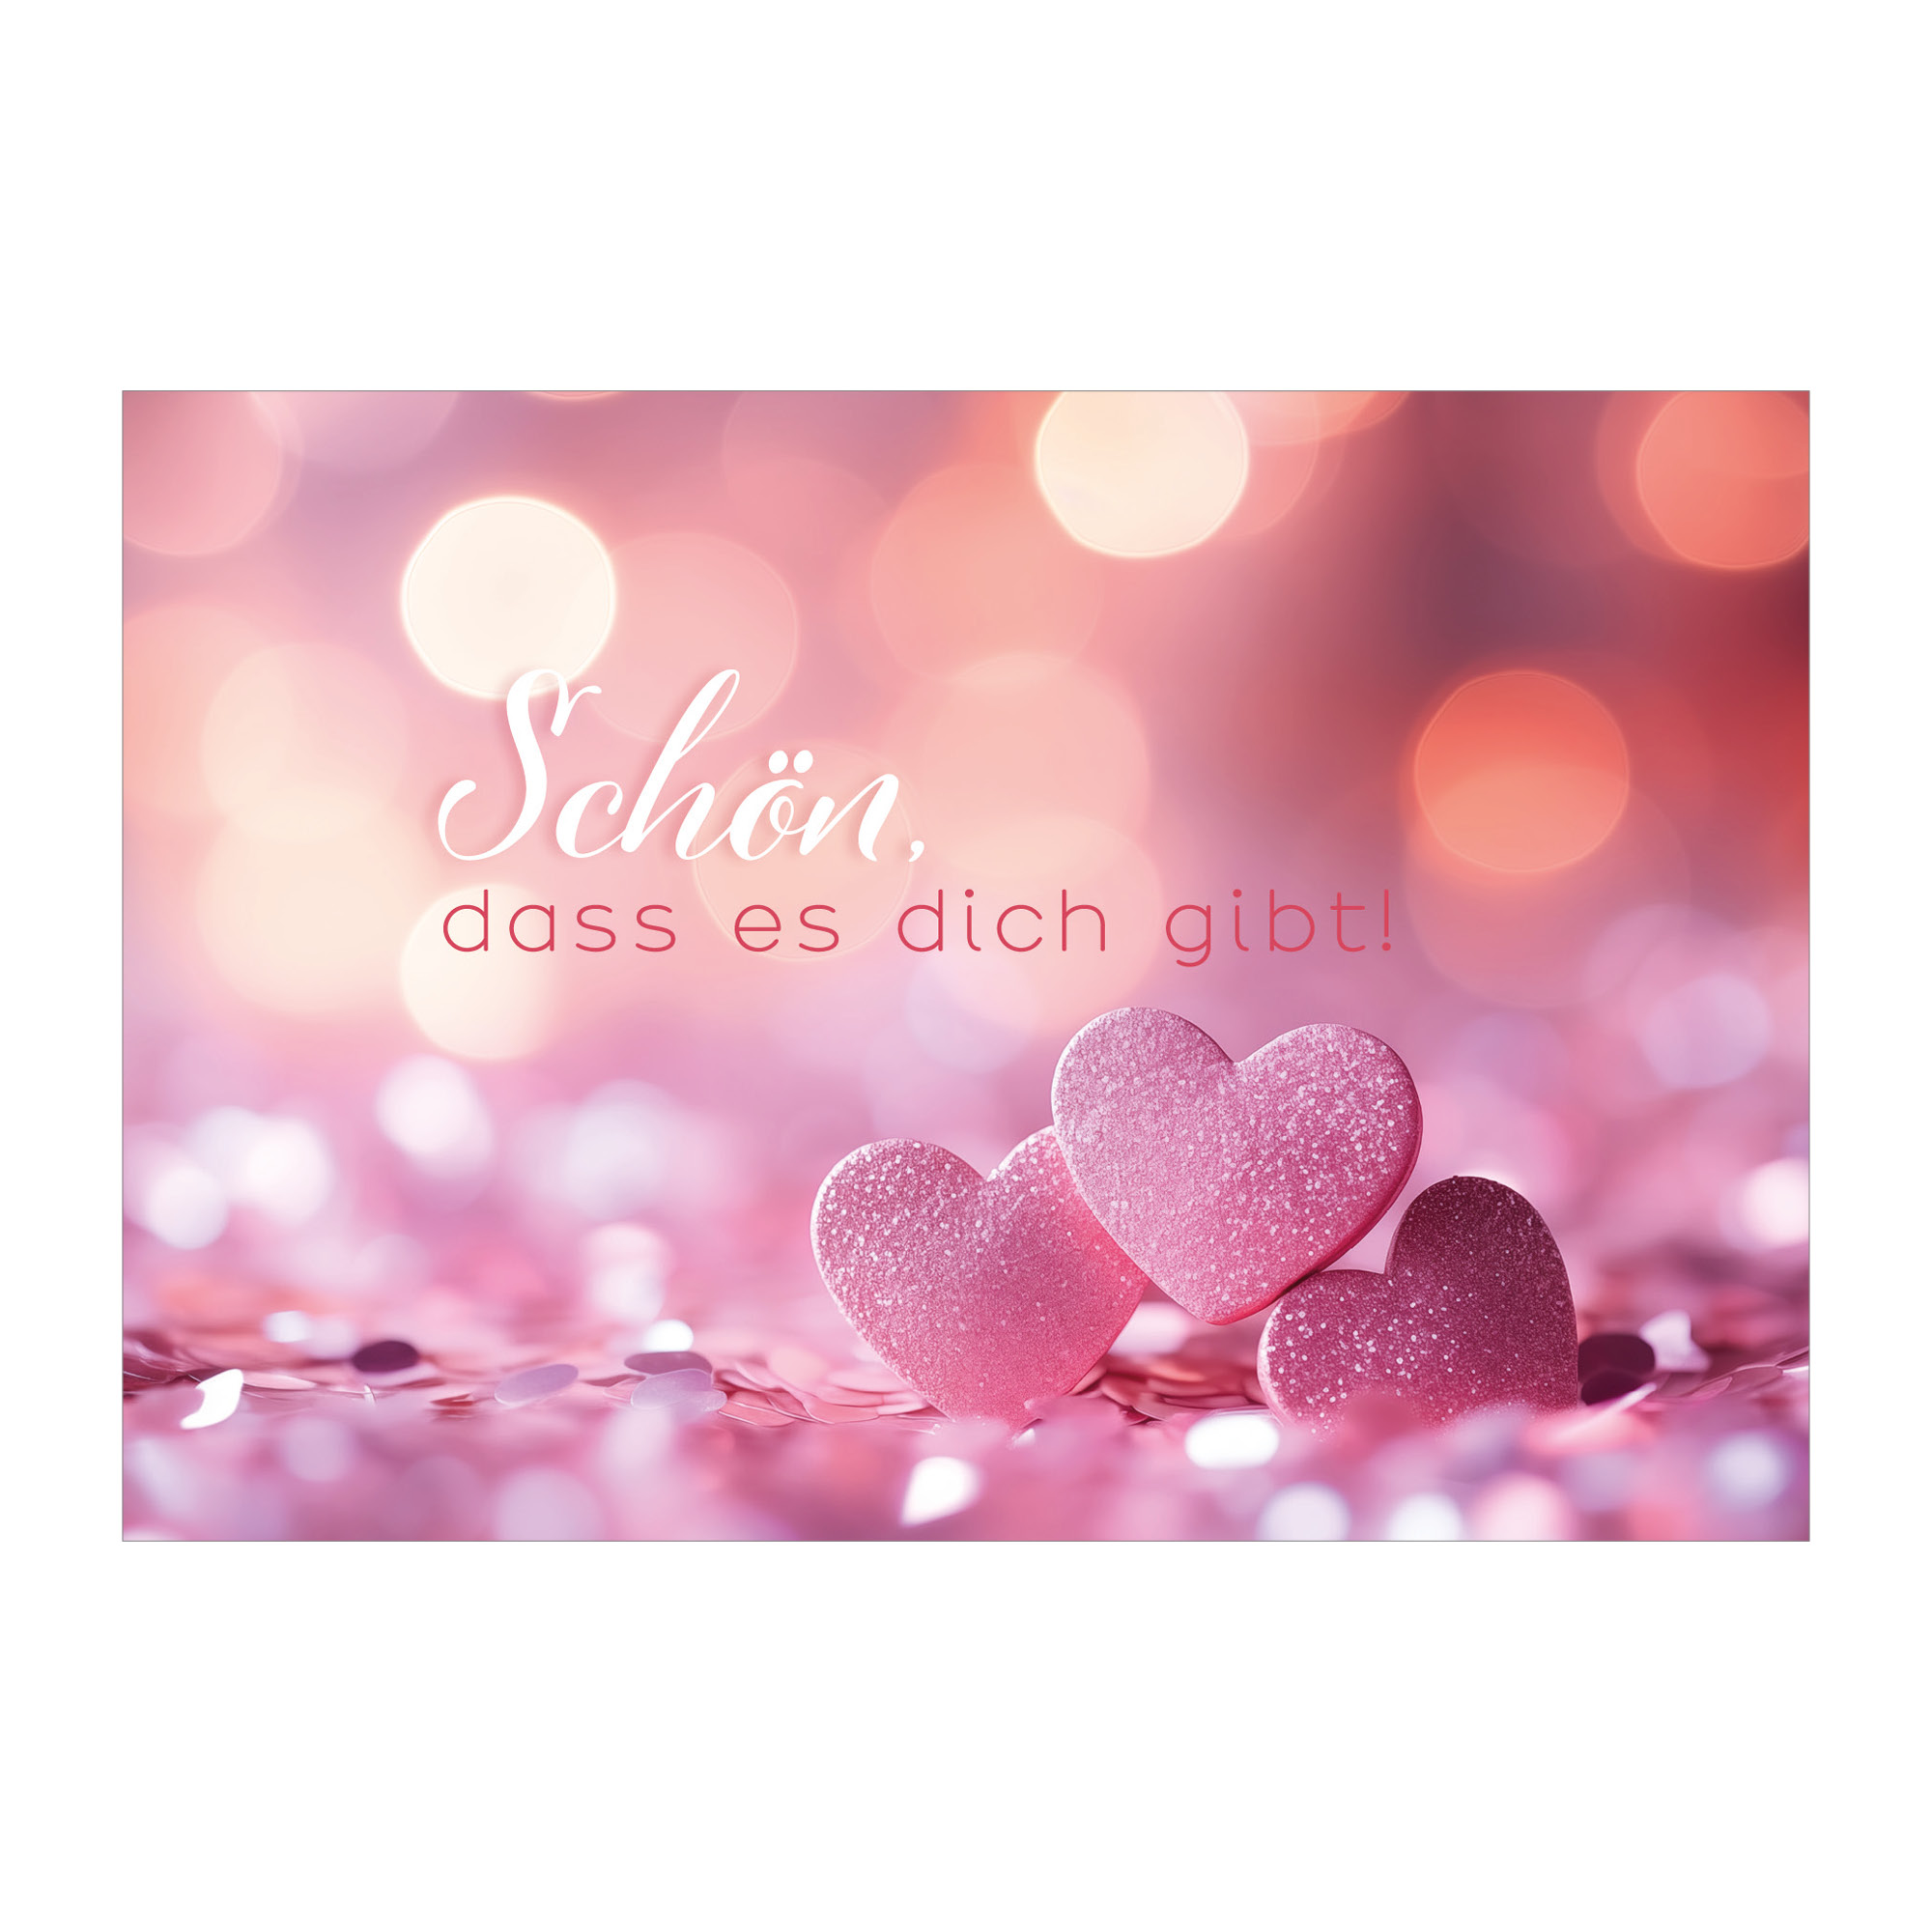 Foto Valentinskarte mit Herzen 1 nachhaltige Klapp Grußkarte made in germany von Kartenkaufrausch.de